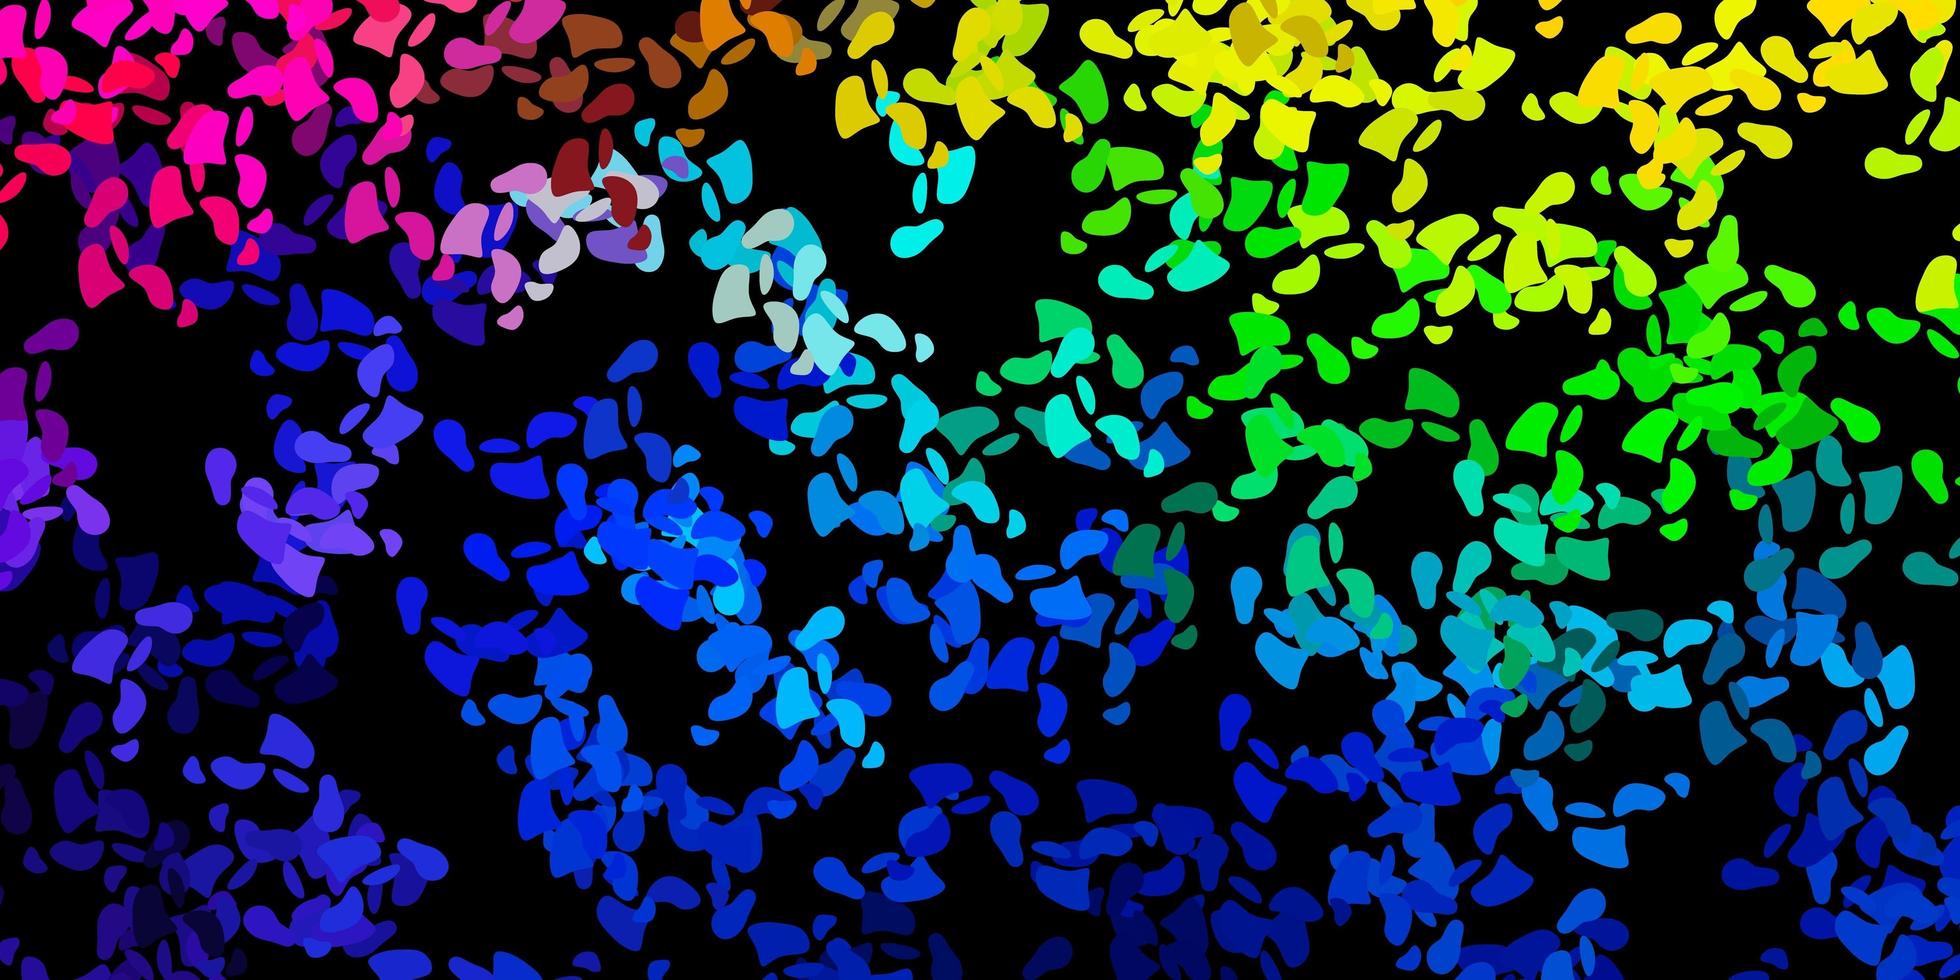 modelo de vetor multicolor escuro com formas abstratas.